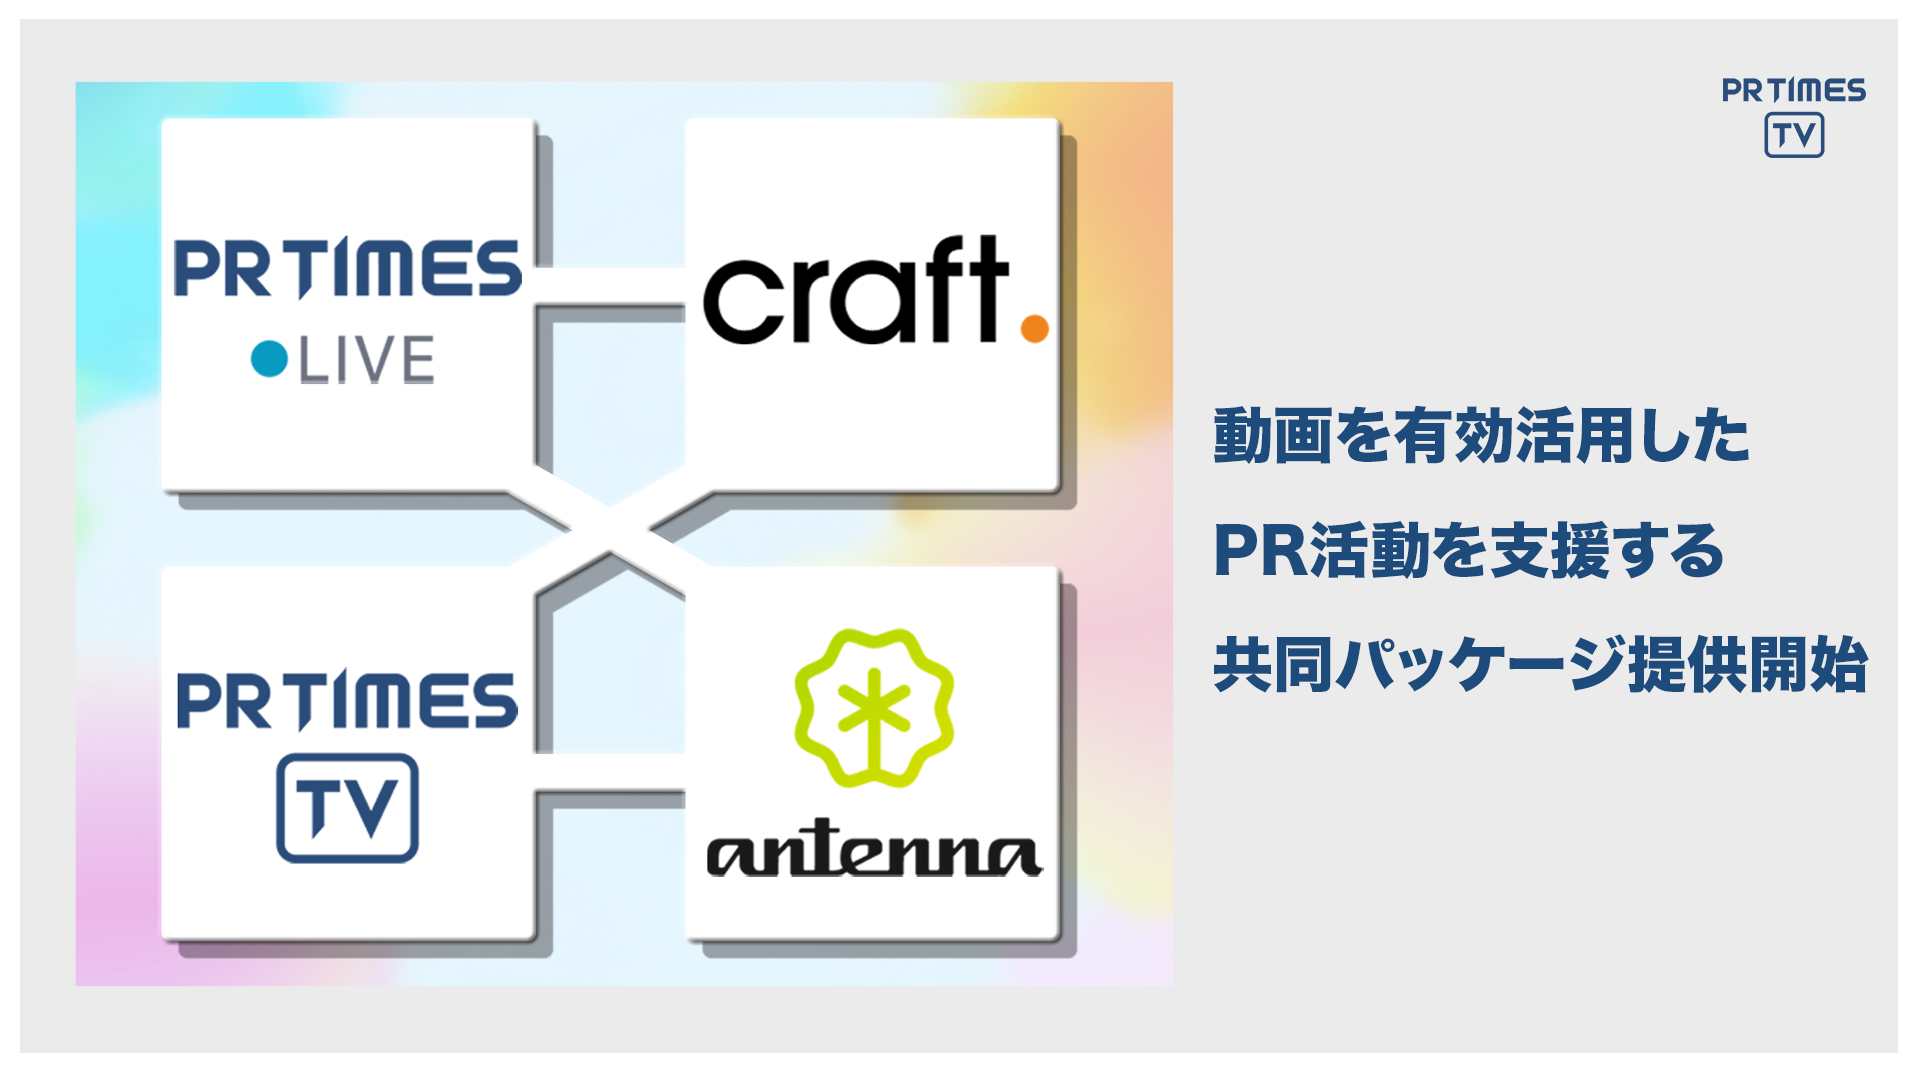 「PR TIMES TV/LIVE ×  craft. × antenna*」　企業の新情報を伝える動画の流通を高める、共同商品の提供を開始